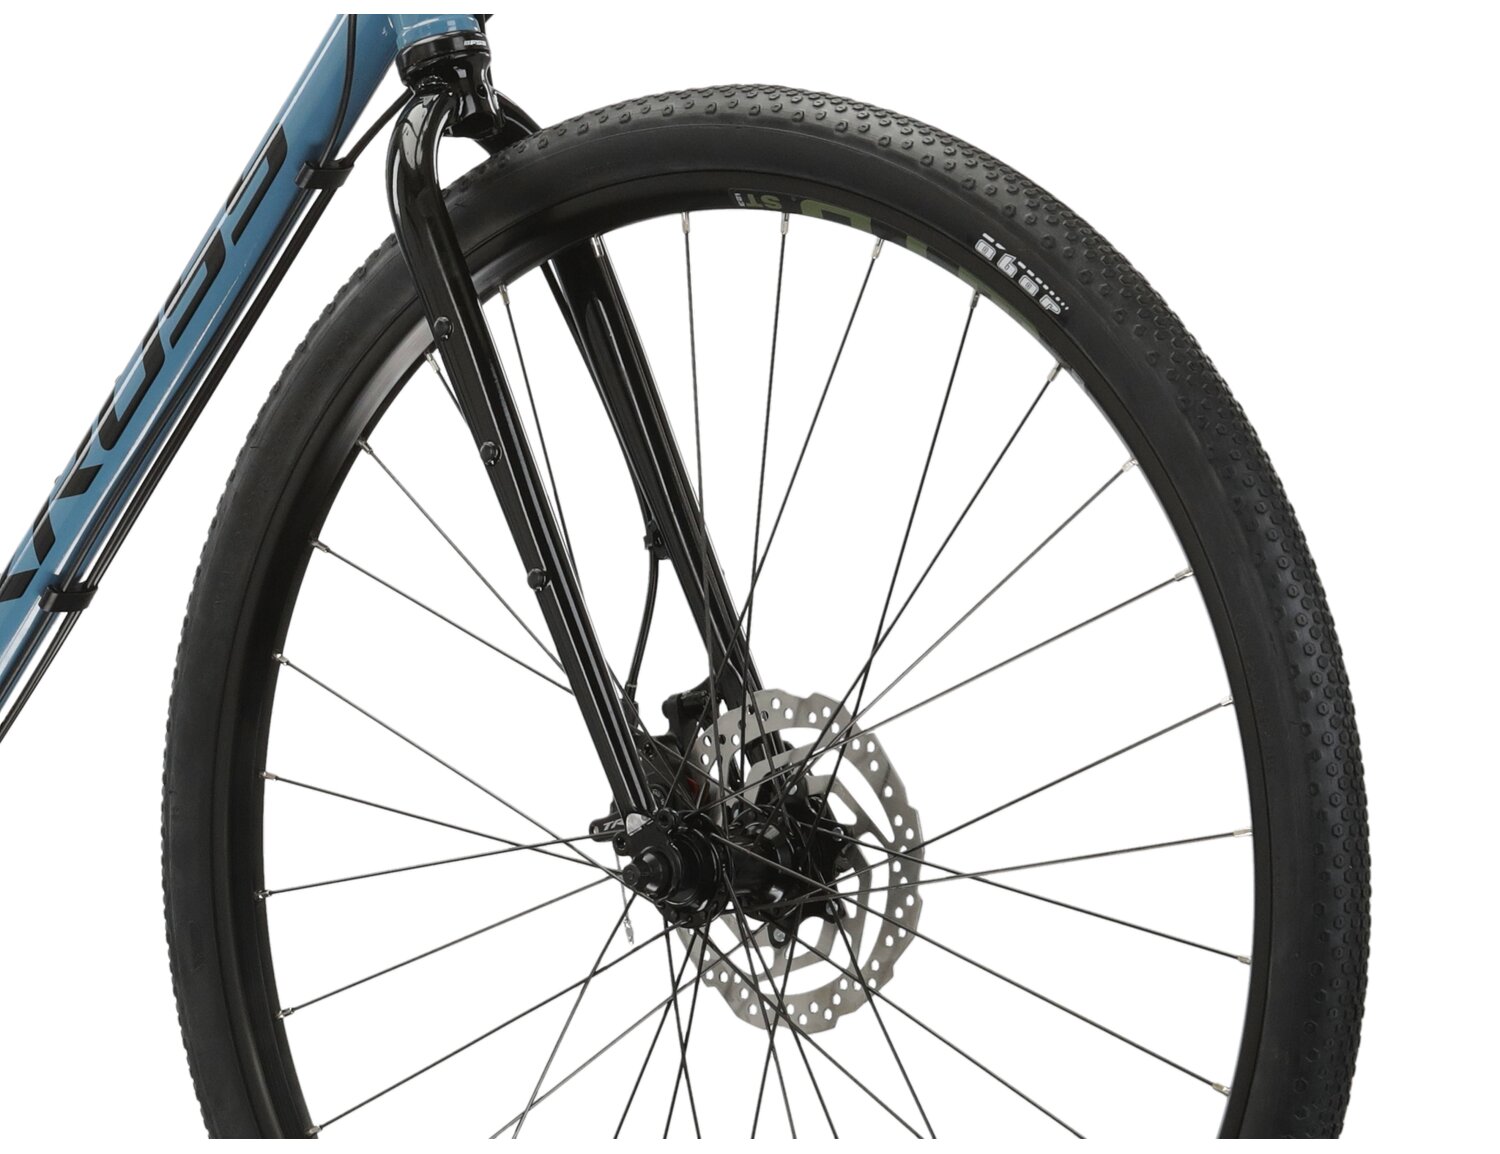  Stalowa rama, sztywny stalowy widelec oraz opony Wanda w rowerze gravelowym KROSS Esker 4.0 KRX 